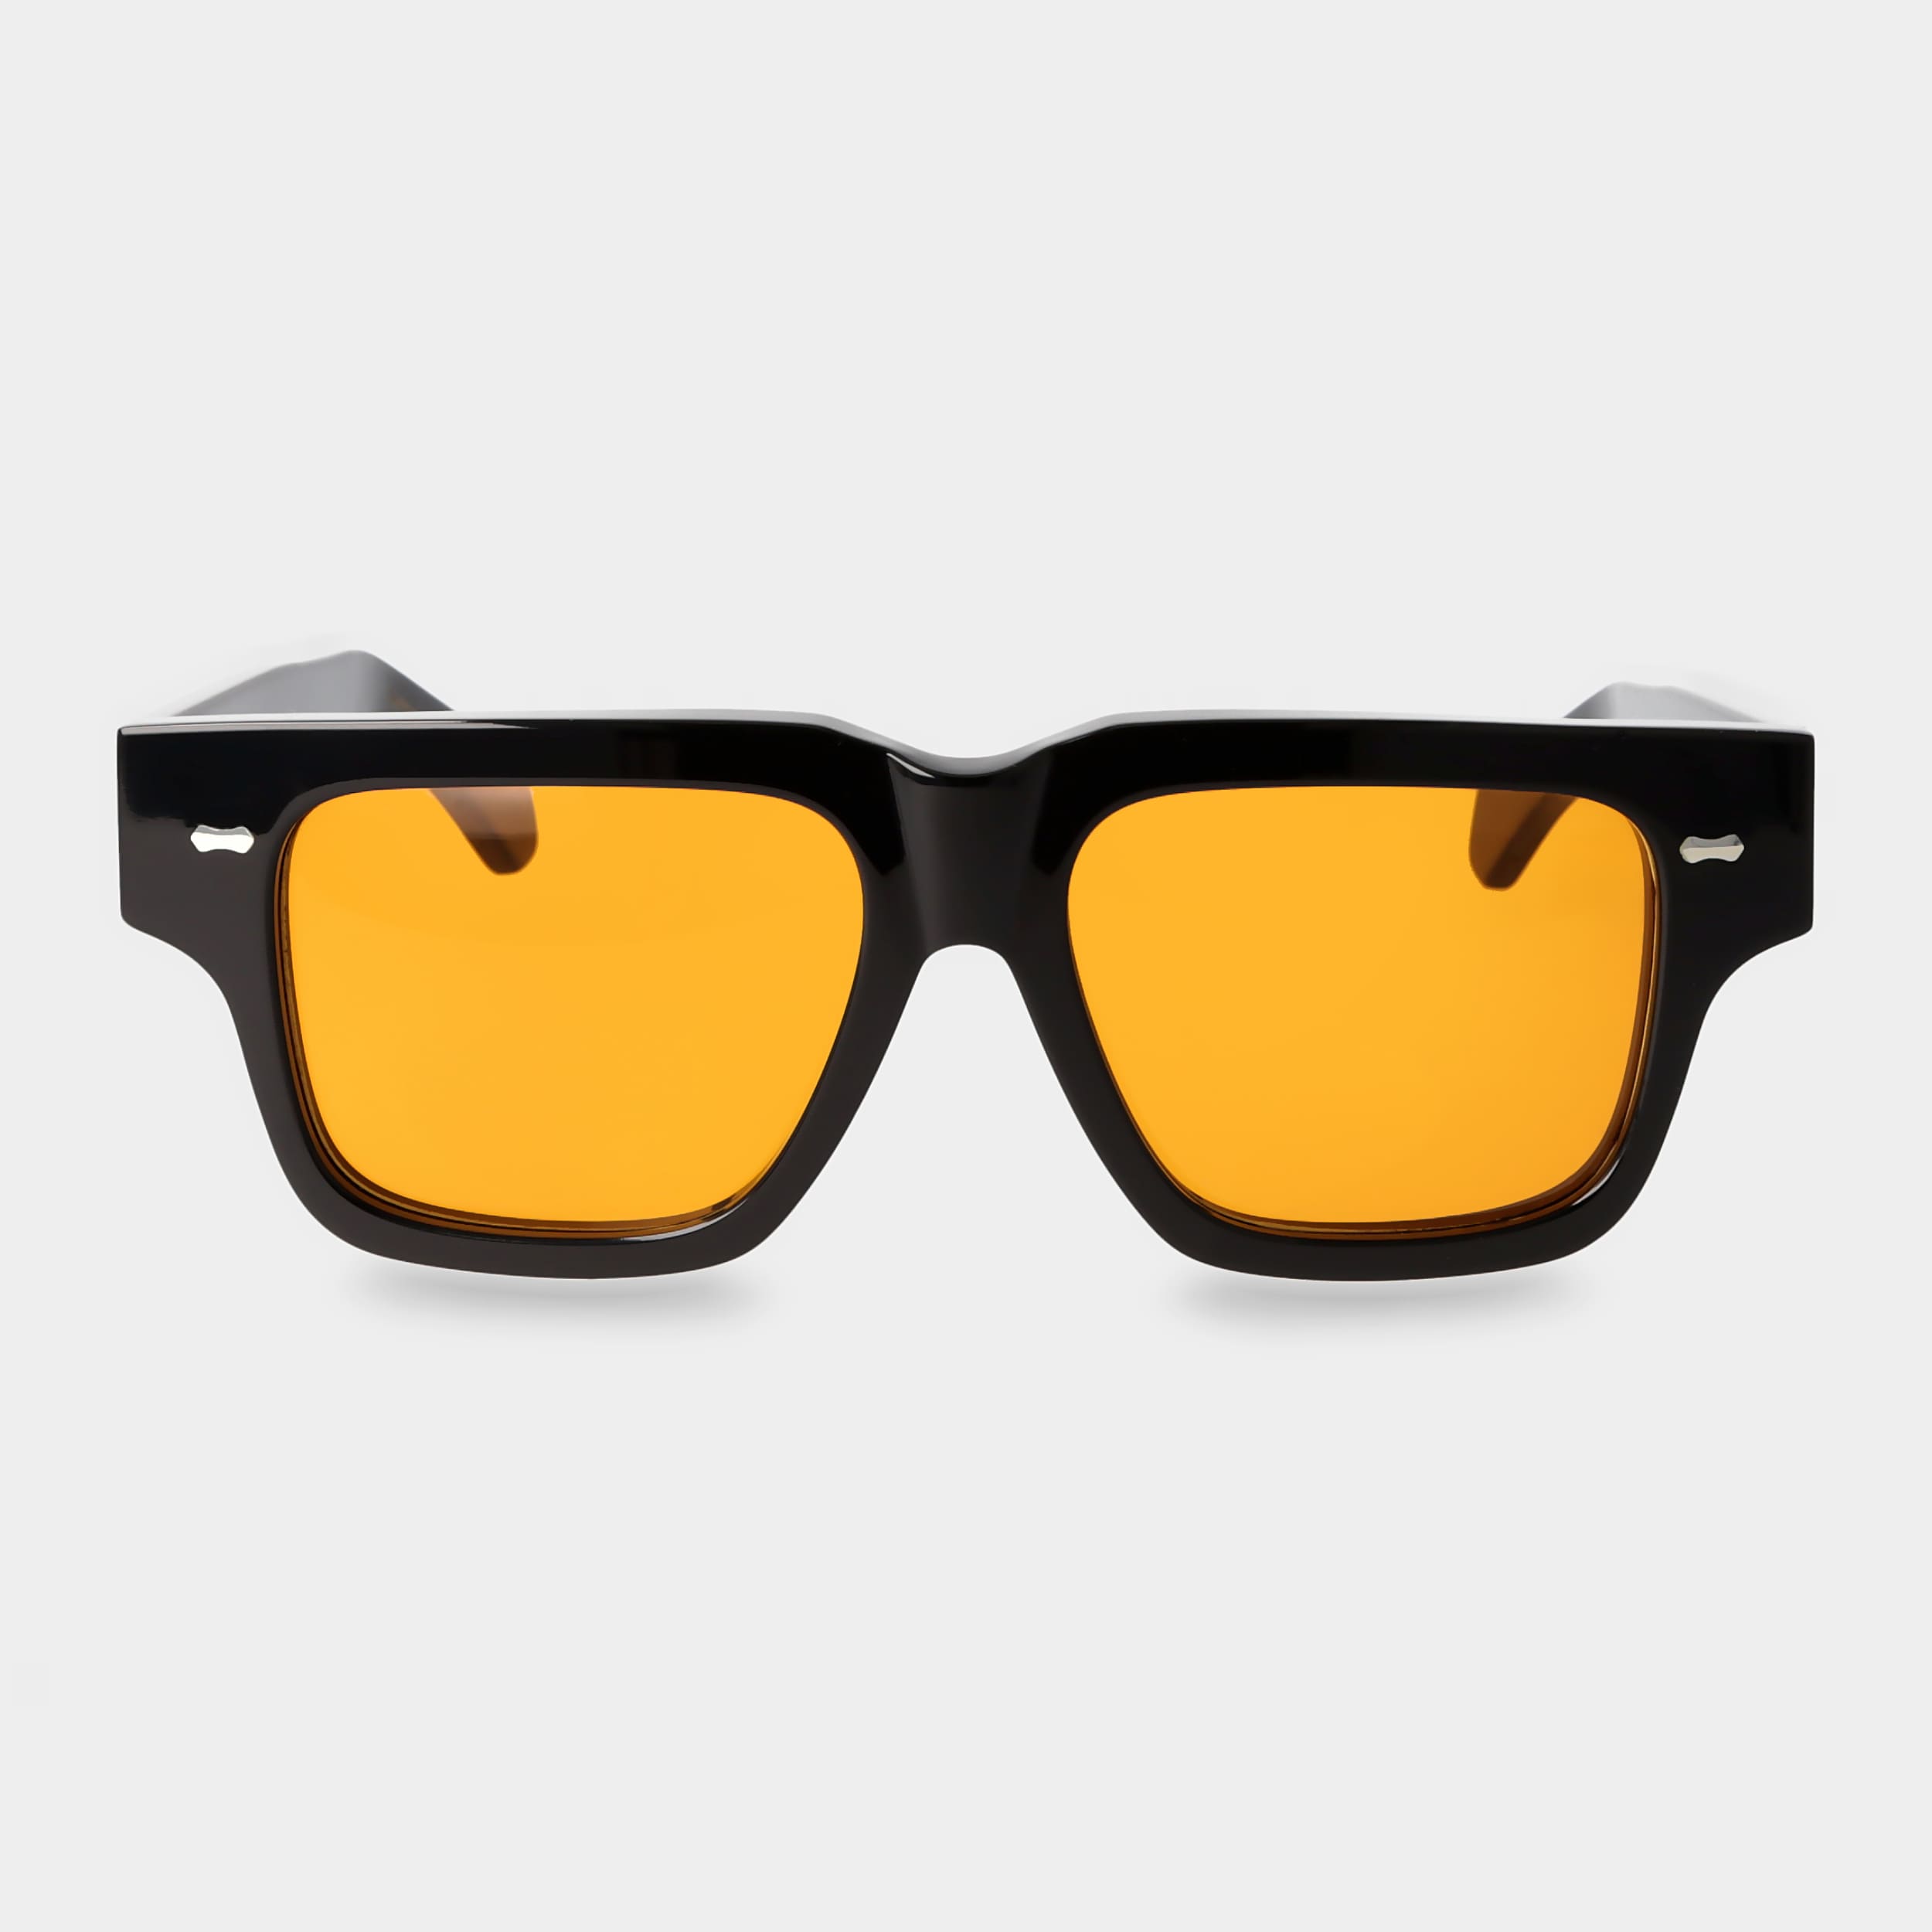 sunglasses-tela-eco-black-orange-sustainable-tbd-eyewear-front